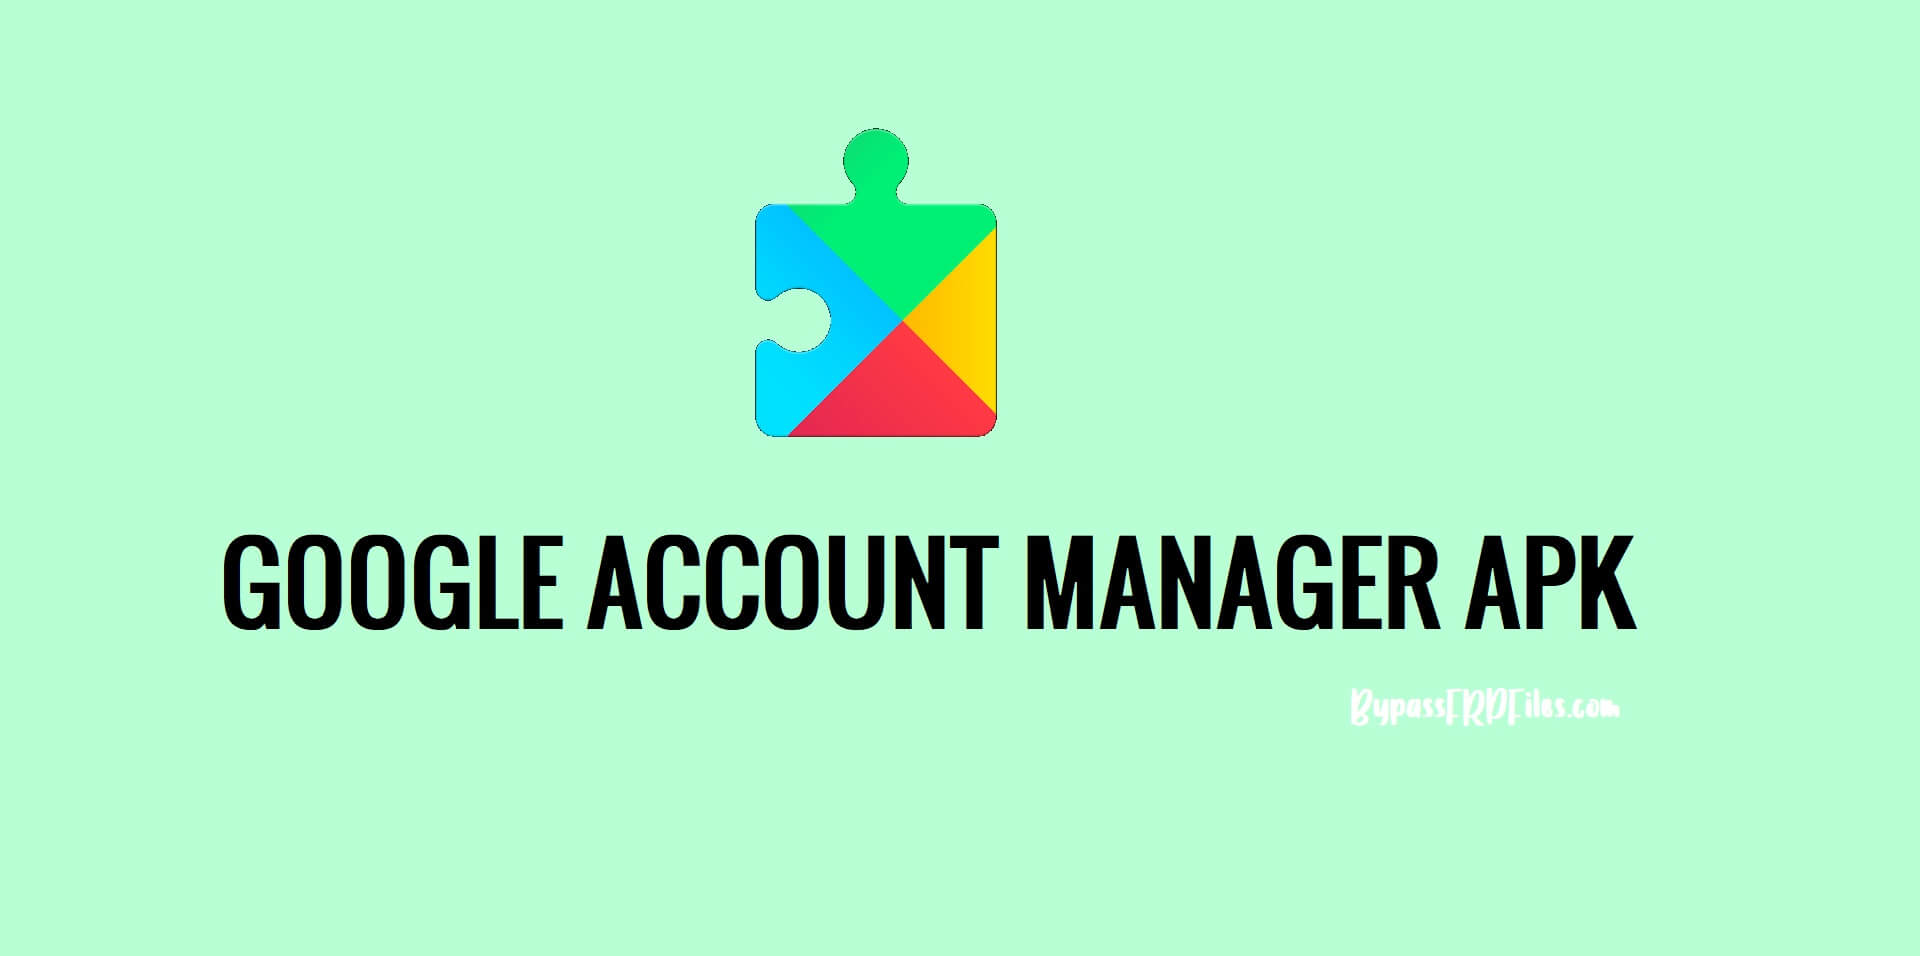 Laden Sie die neueste und alte Google Account Manager-Apk auf FRP herunter